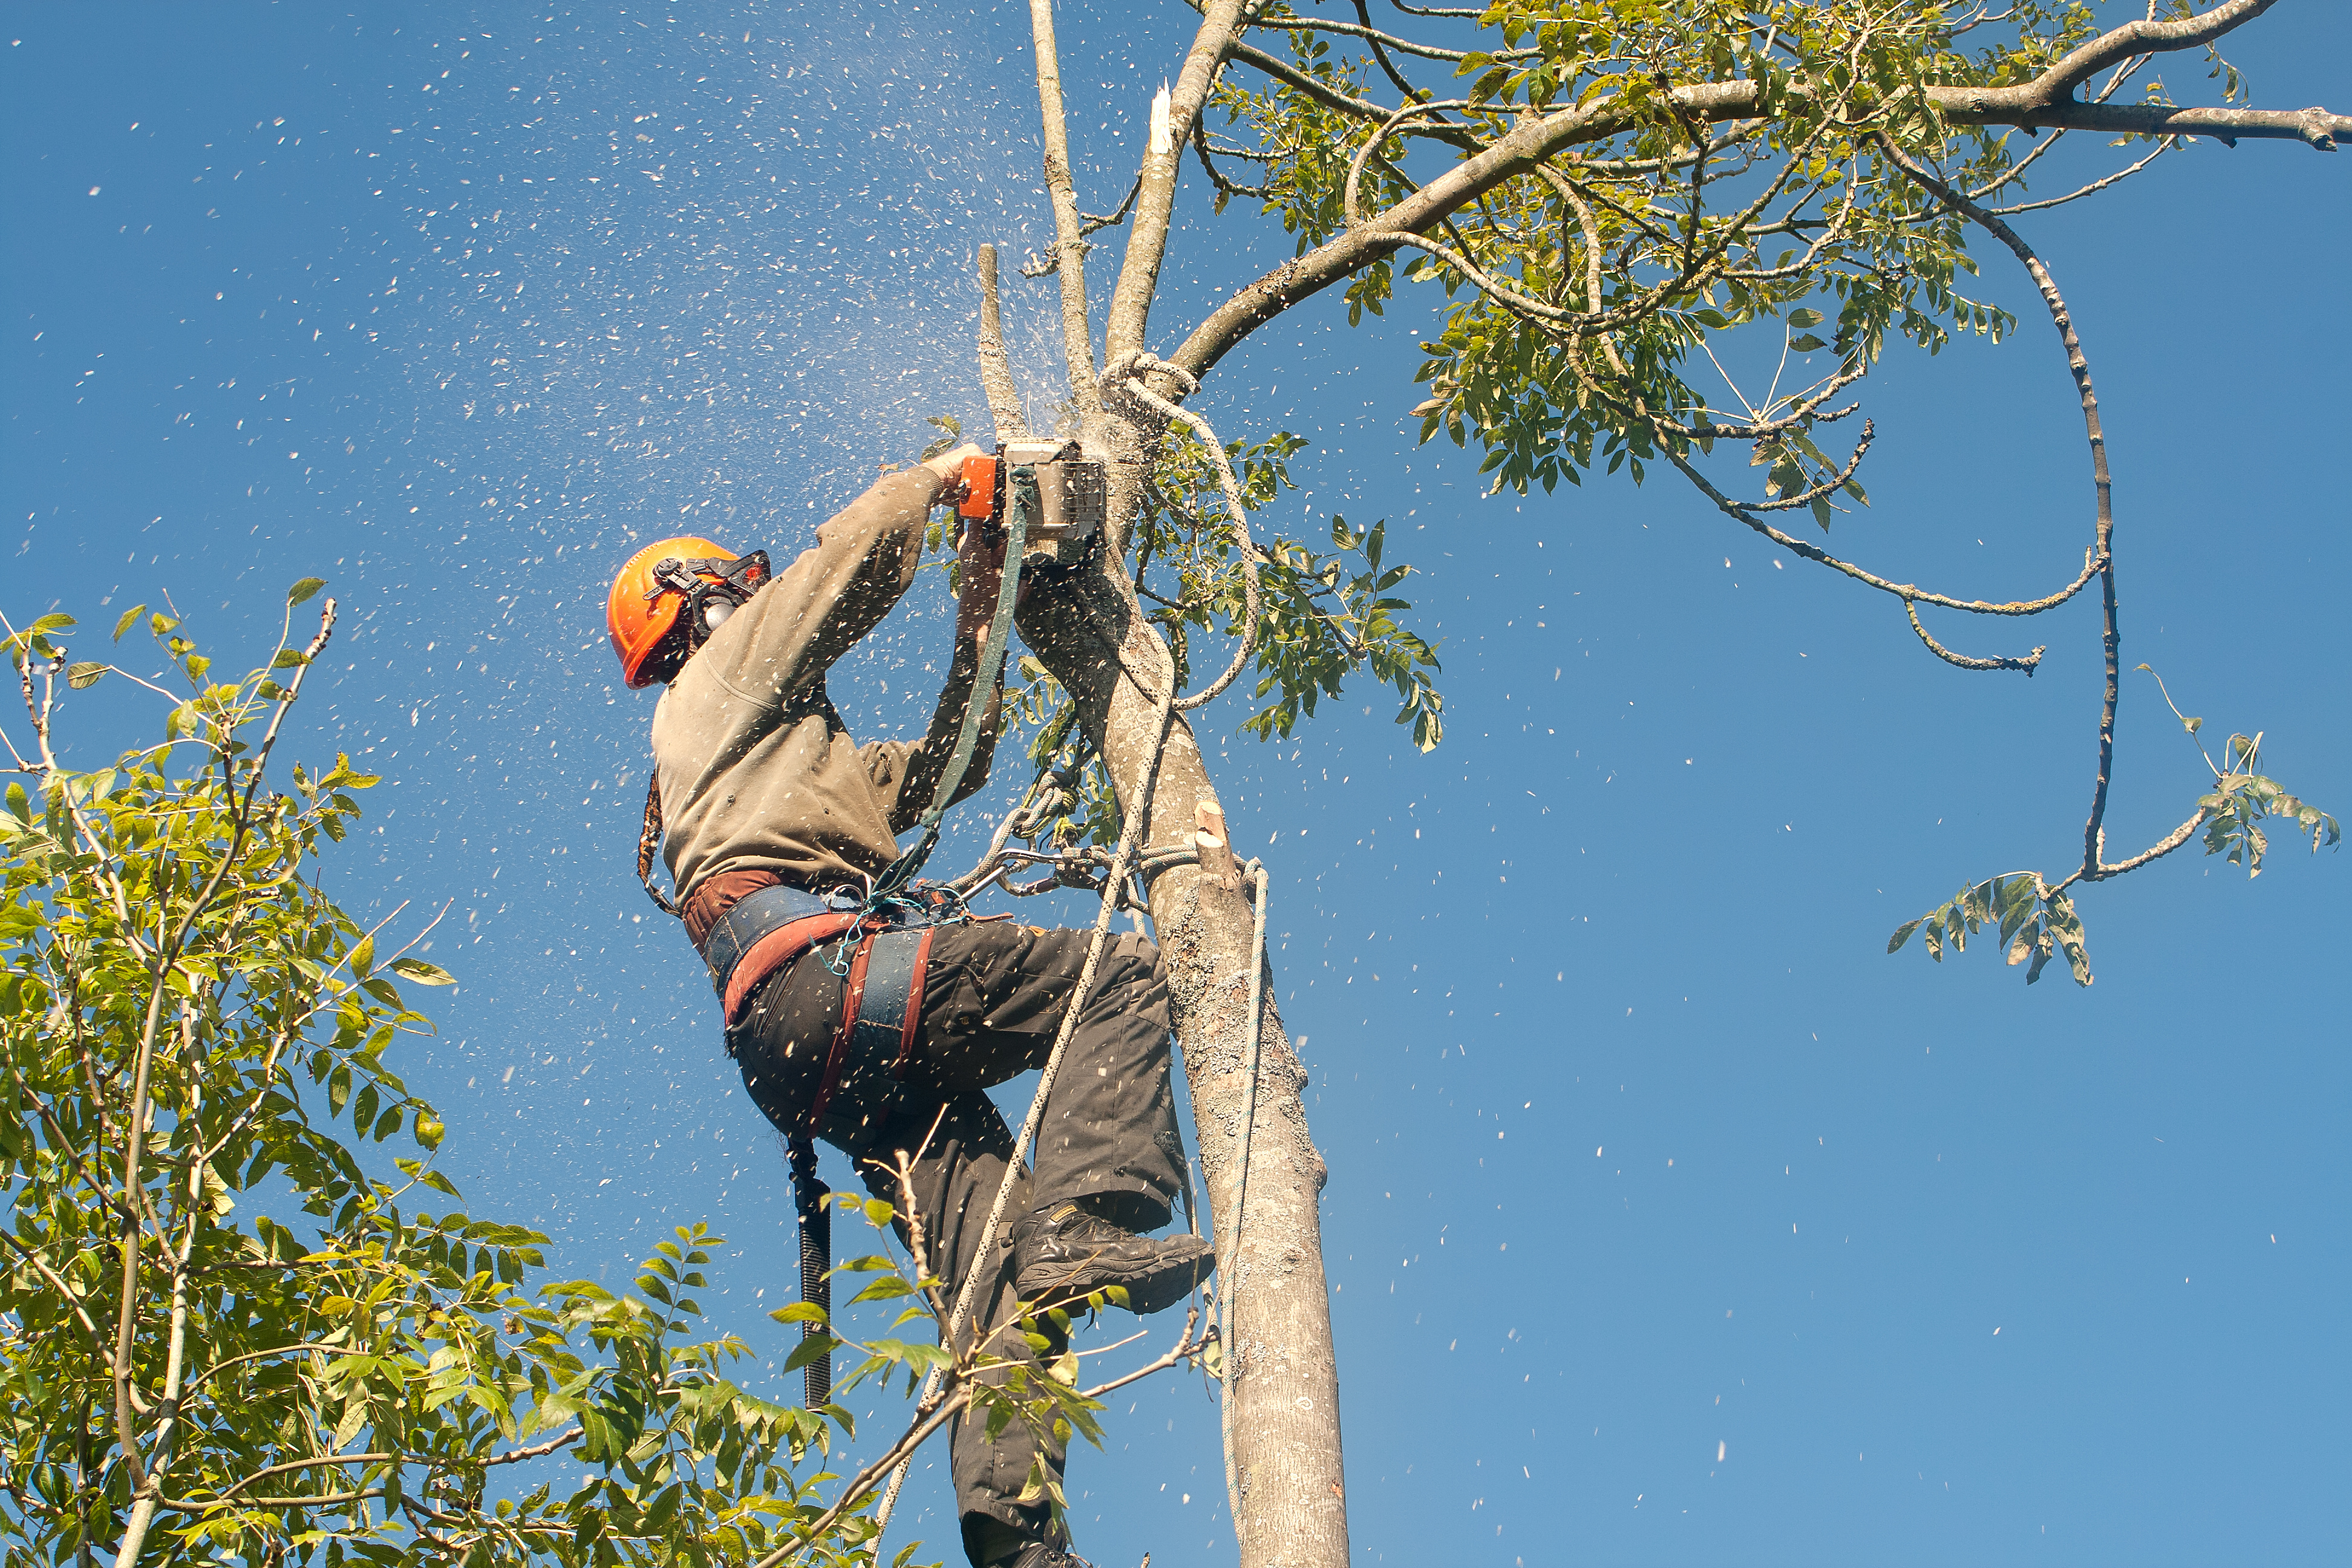 Rizikové kácení stromů